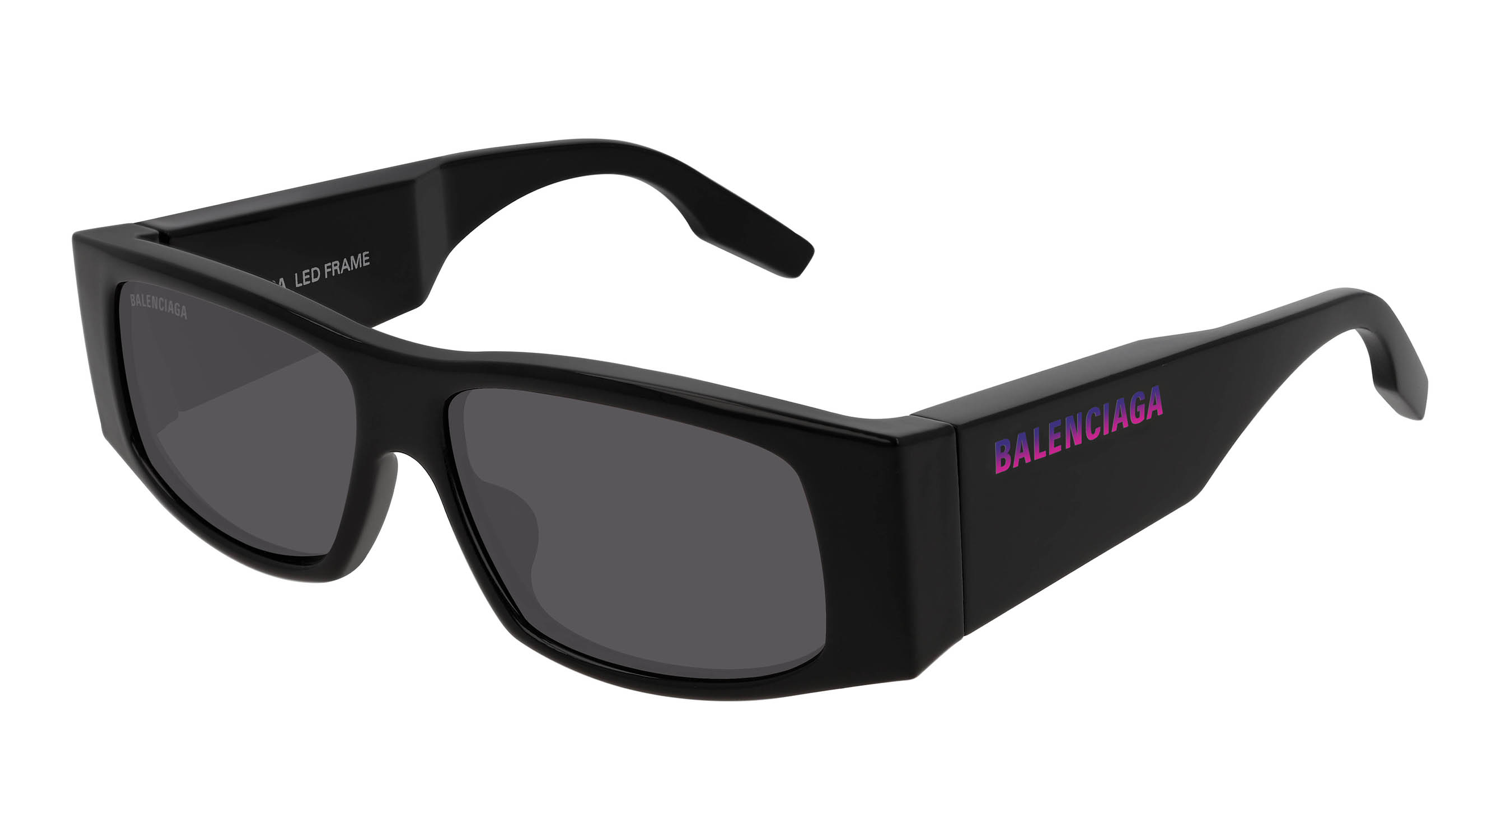 Global: Balenciaga LED Frame Sunglasses | superfuture®